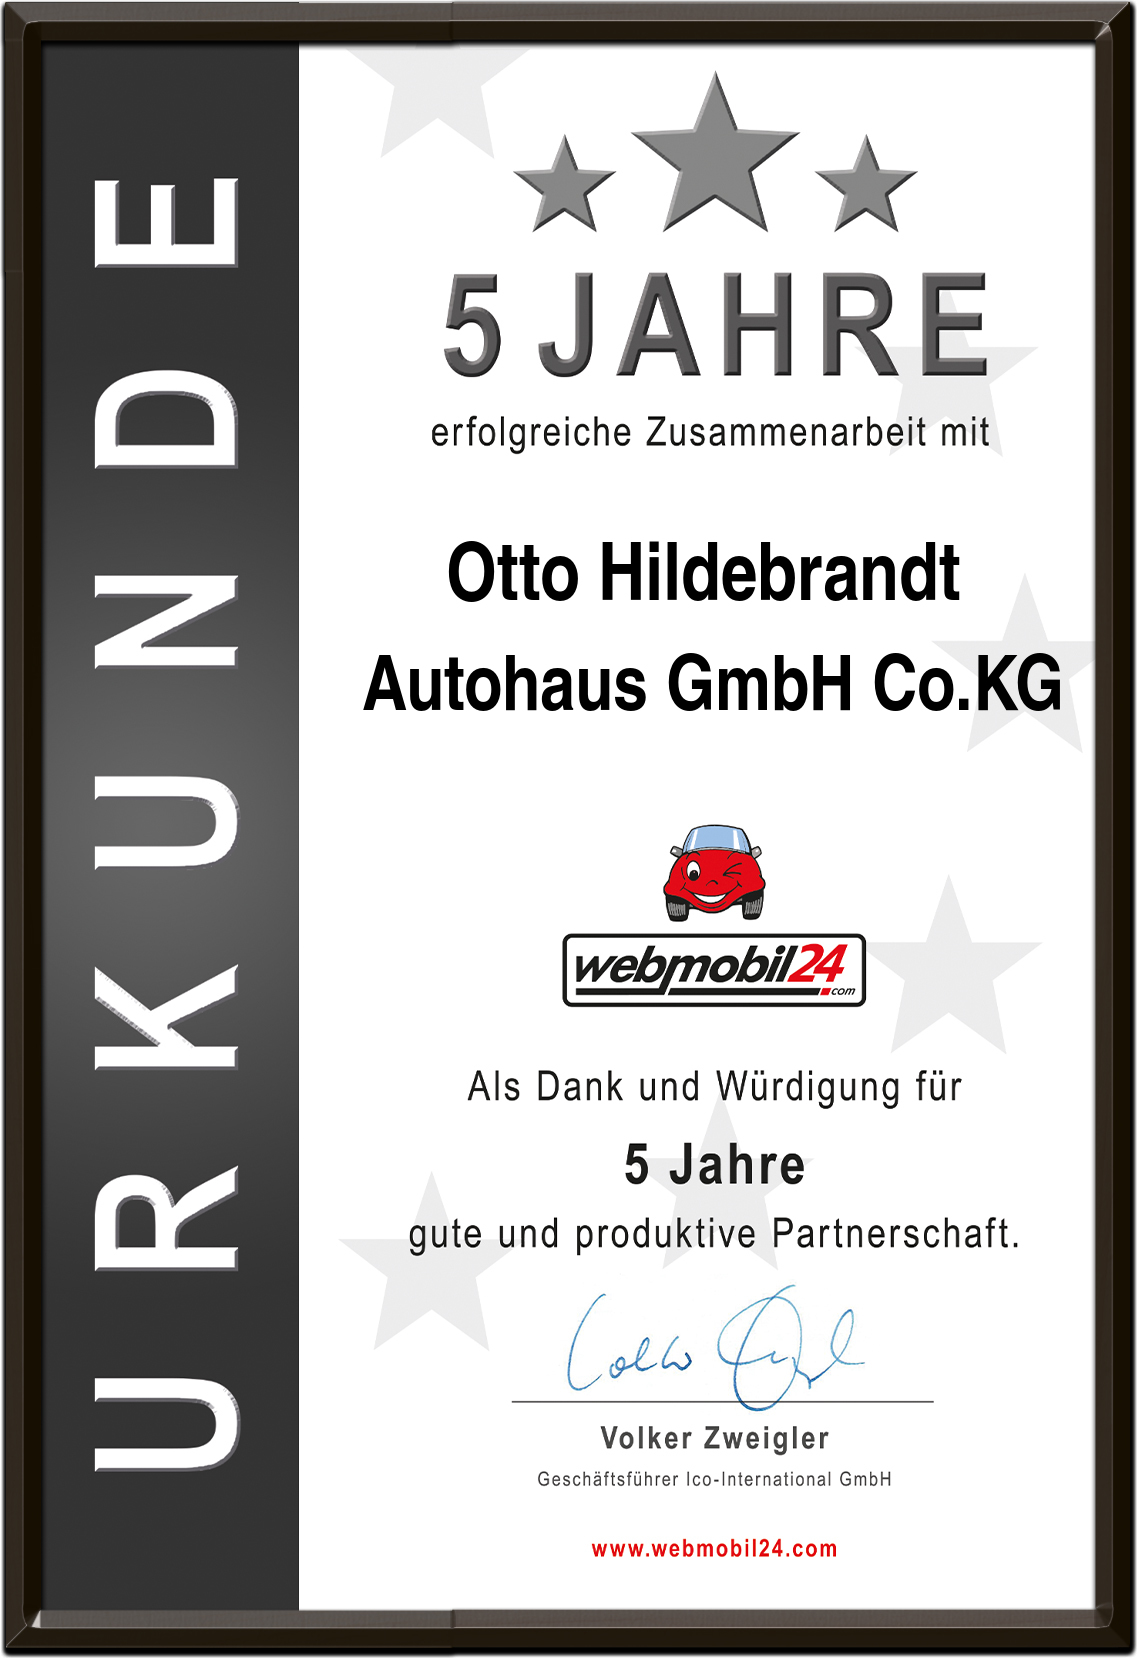 Otto Hildebrandt Autohaus GmbH Co.KG